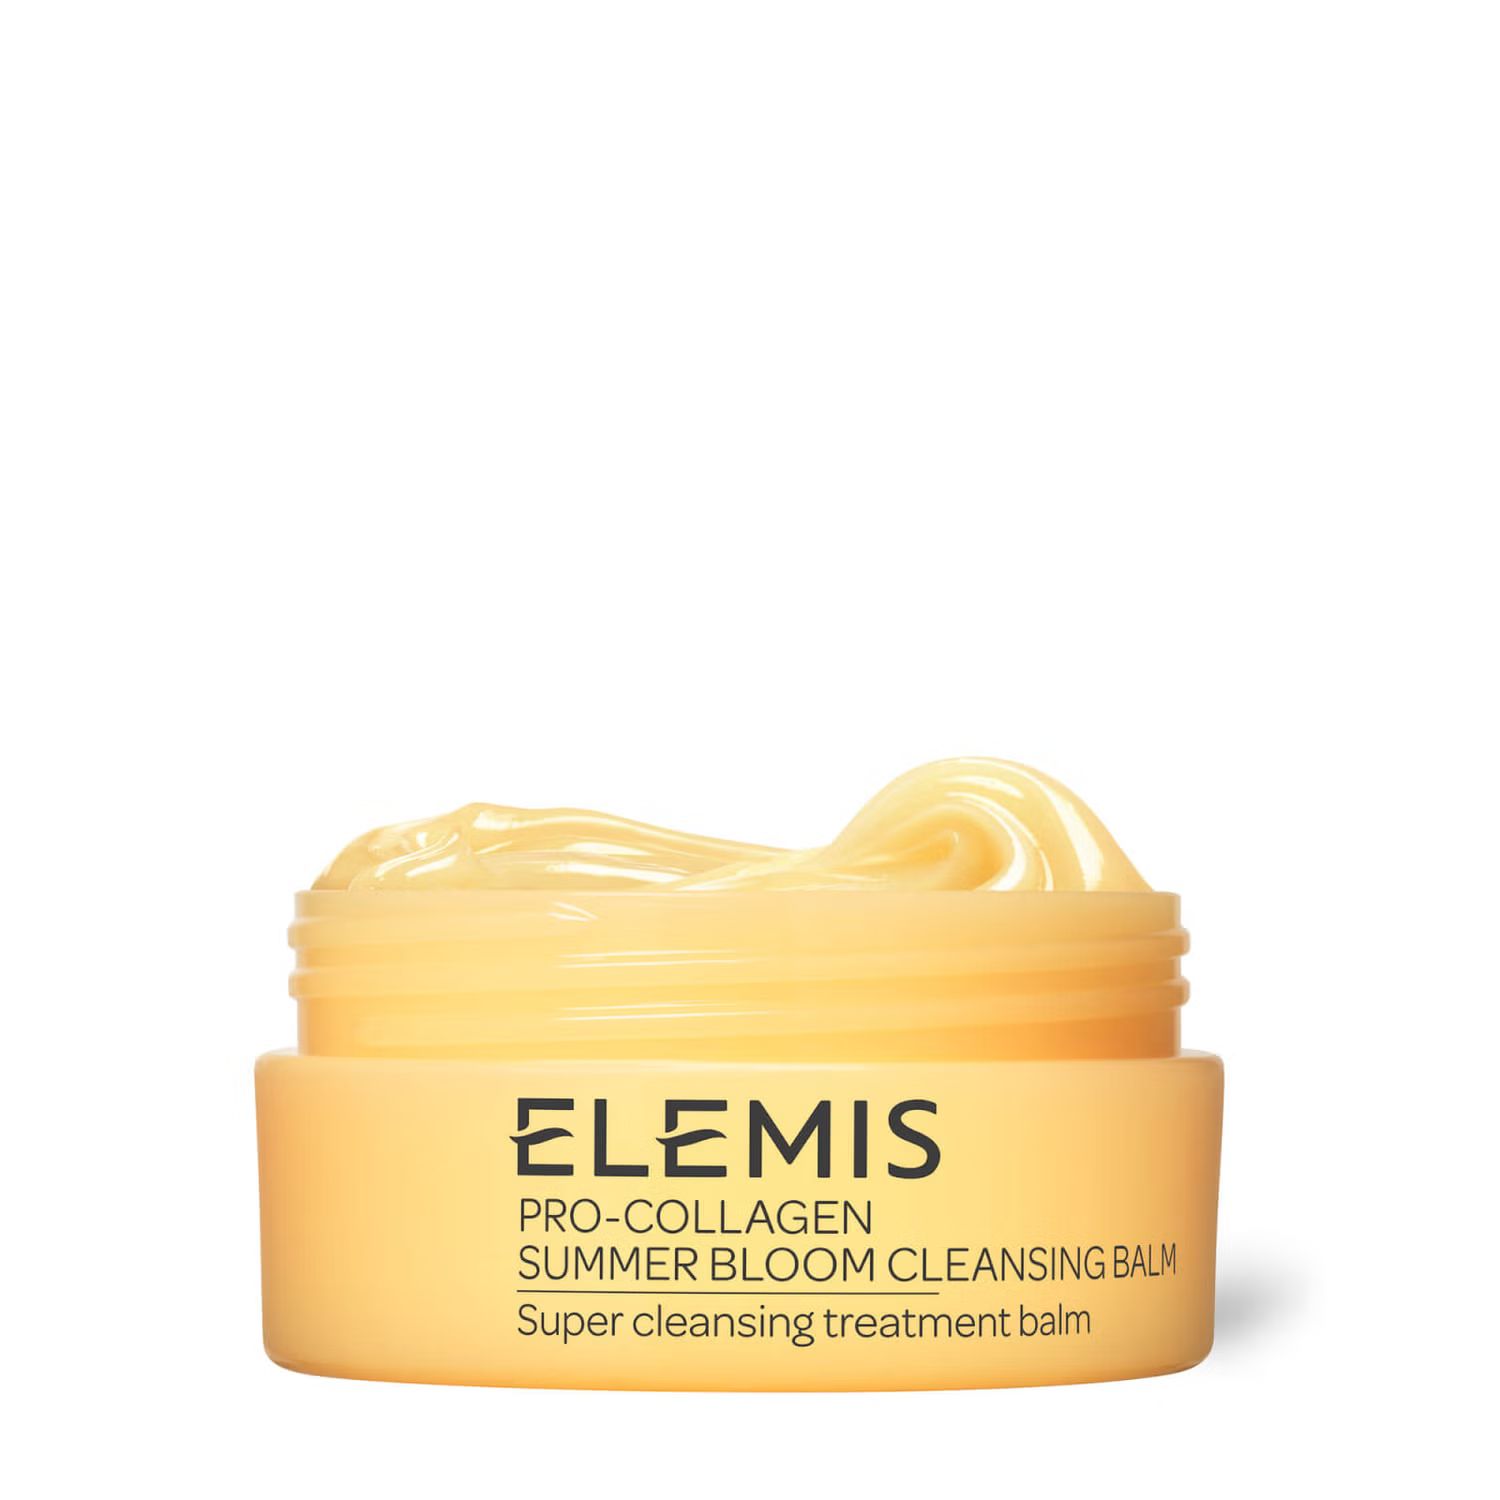 ELEMIS Pro-Collagen Summer Bloom Cleansing Balm 100g | Dermstore (US)